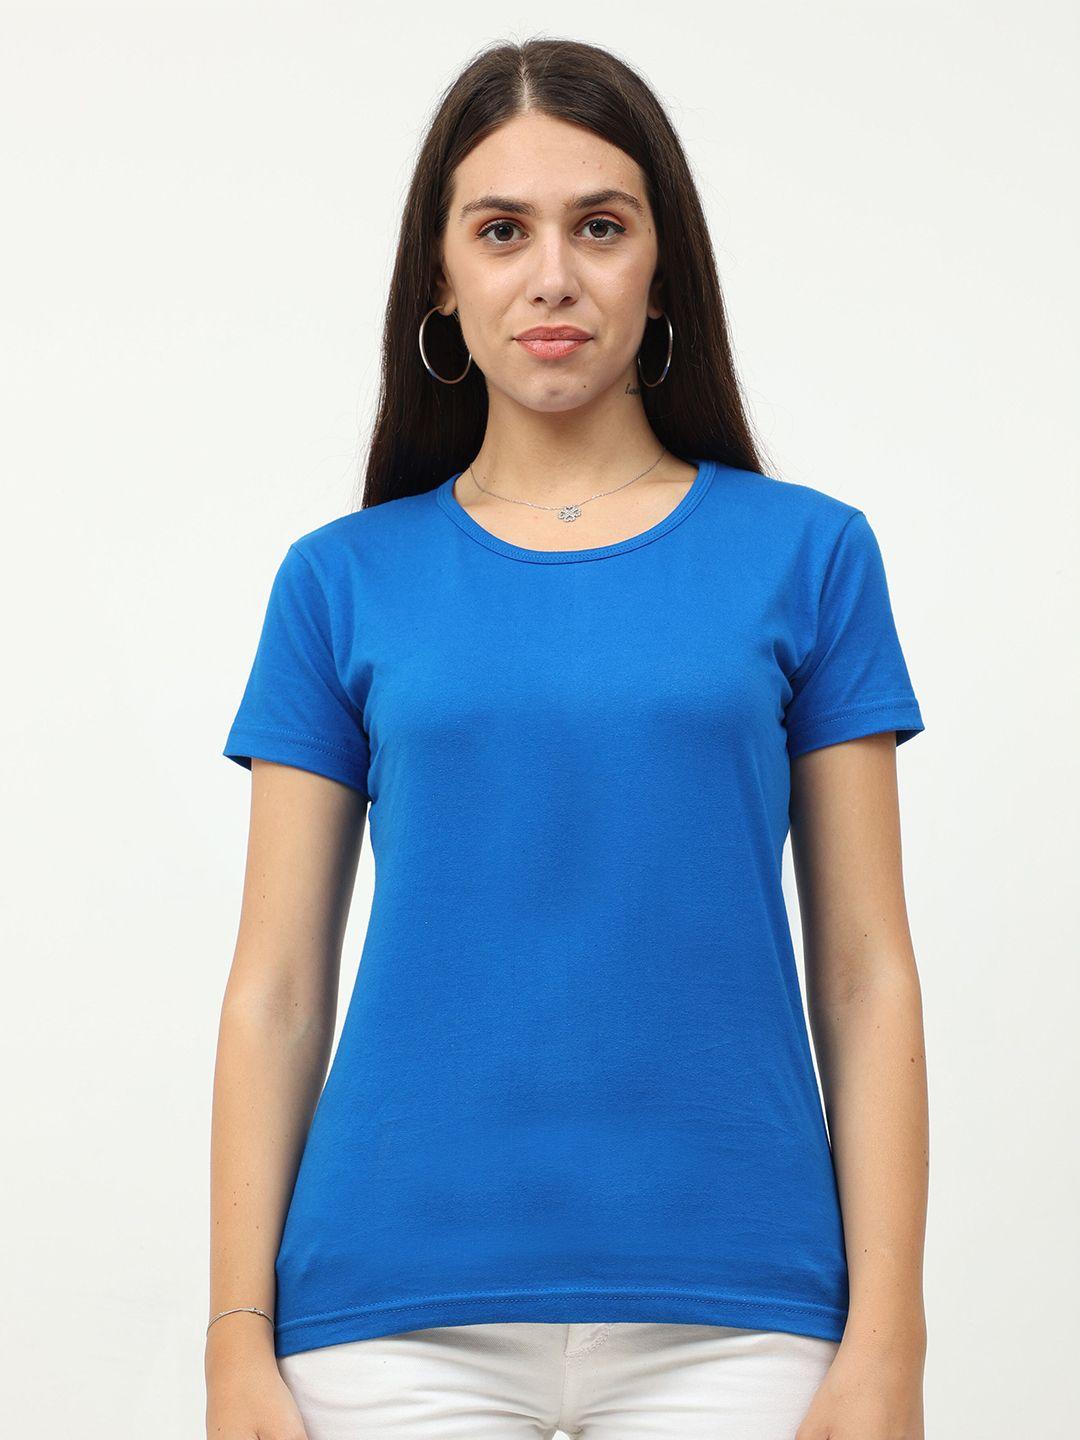 fleximaa-women-blue-t-shirt